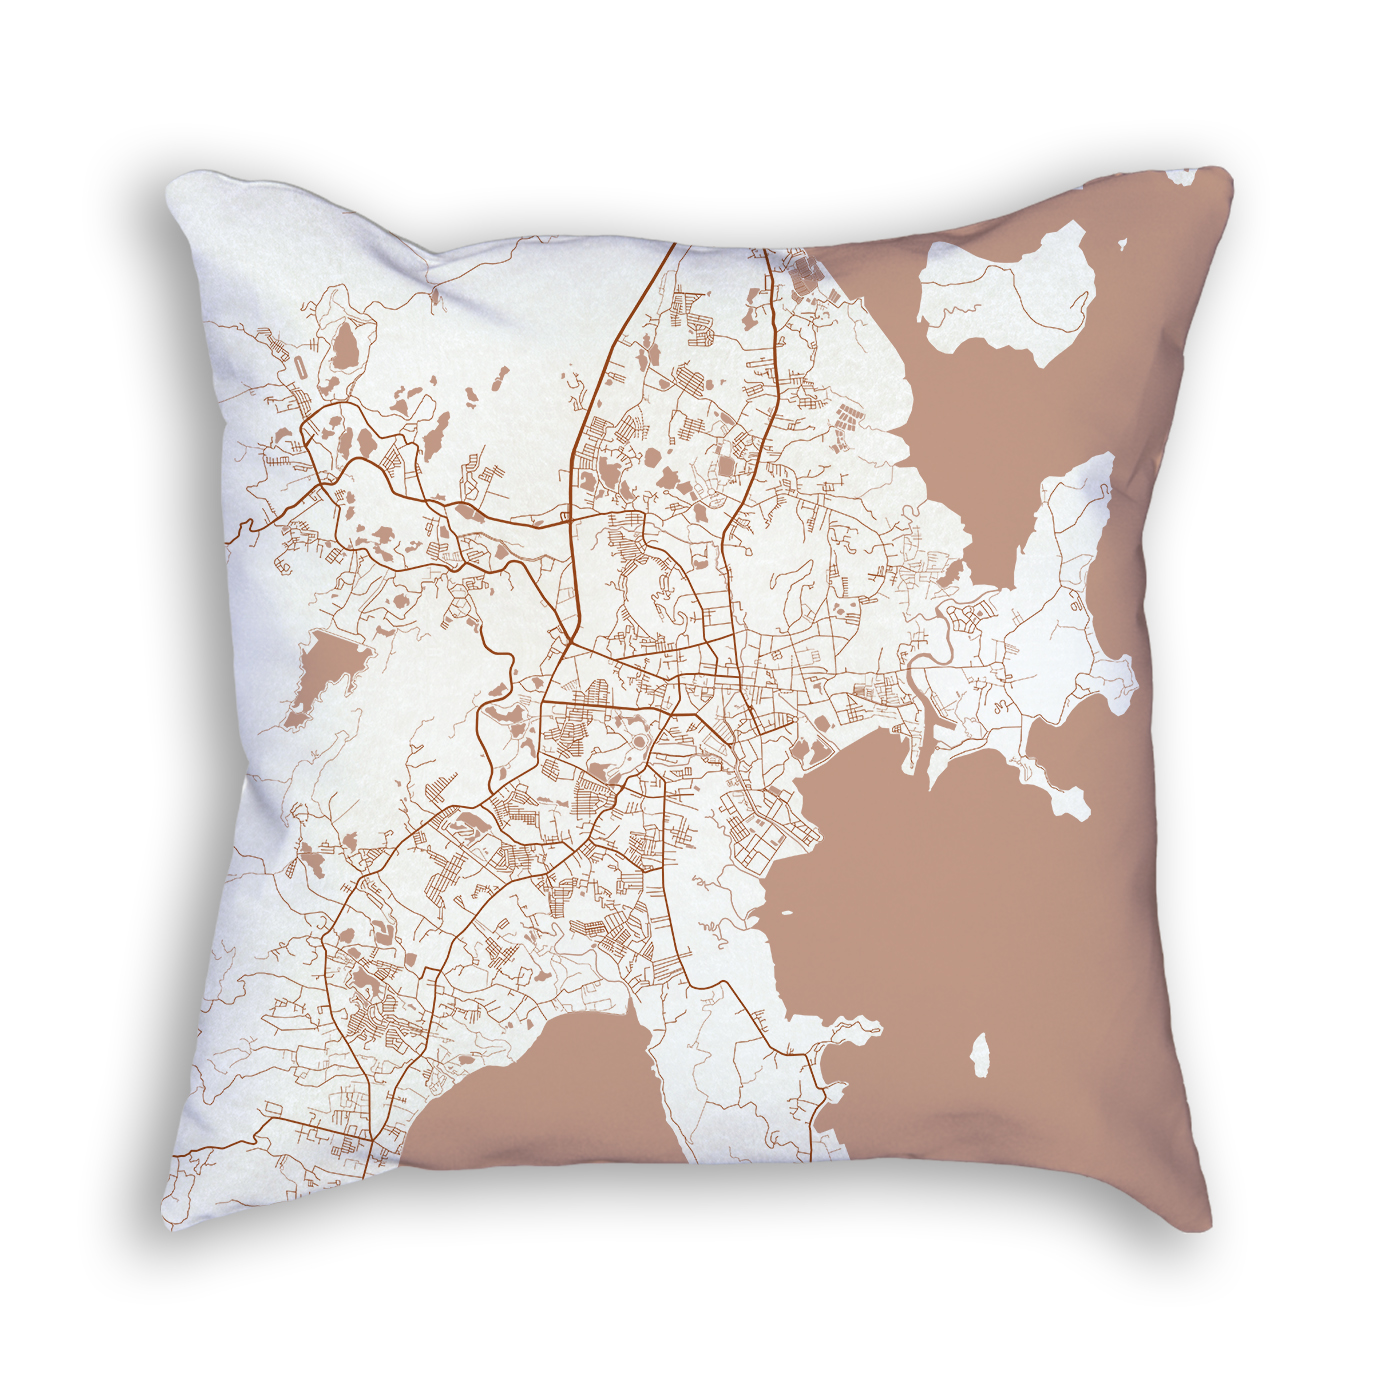 Phuket Thailand City Map Art Decorative Throw Pillow